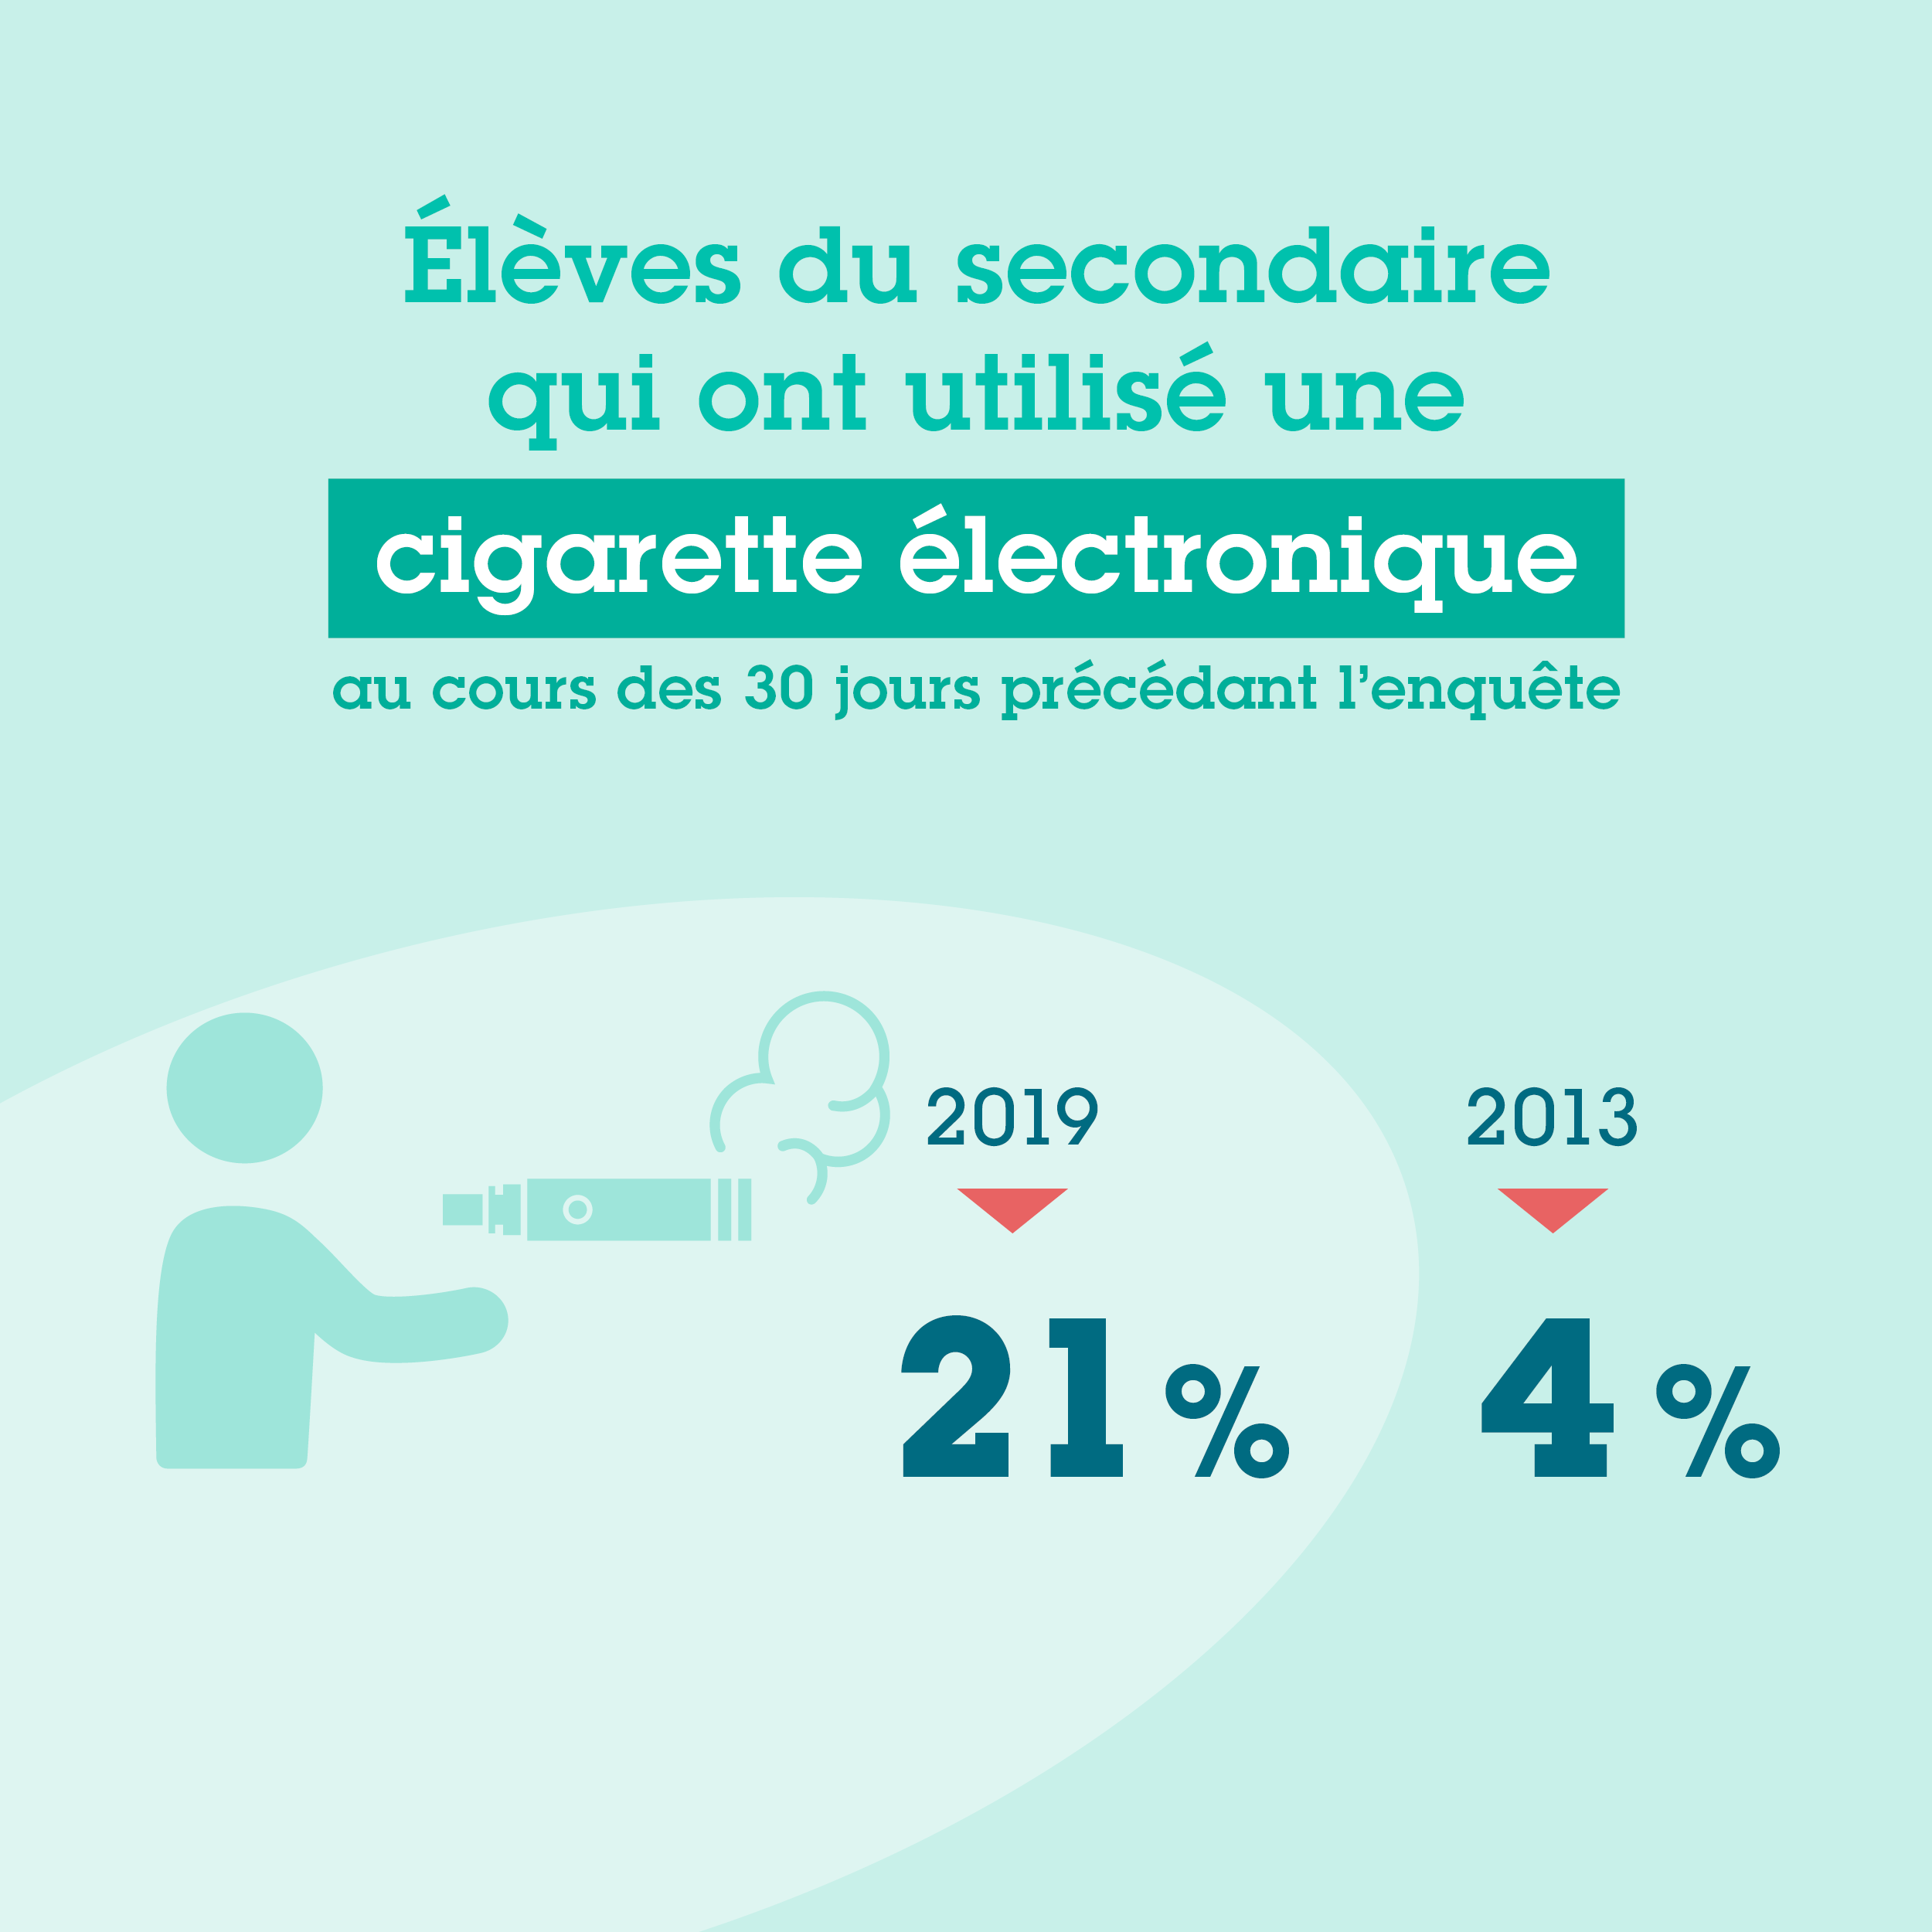 21 % des élèves du secondaire avaient utilisé une cigarette électronique en 2019.